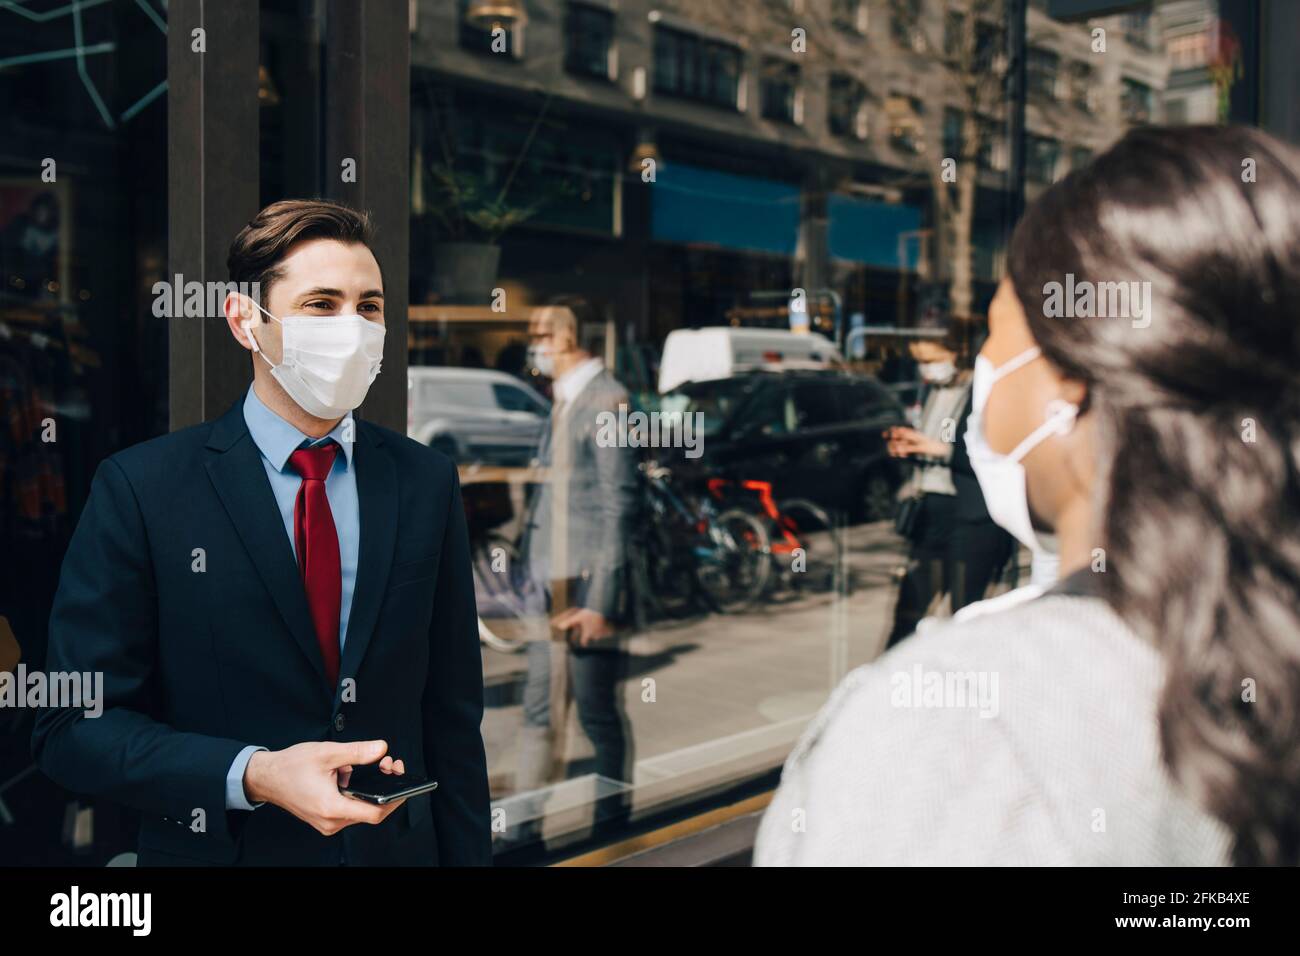 Homme d'affaires sous masque parlant avec une collègue pendant une pandémie Banque D'Images